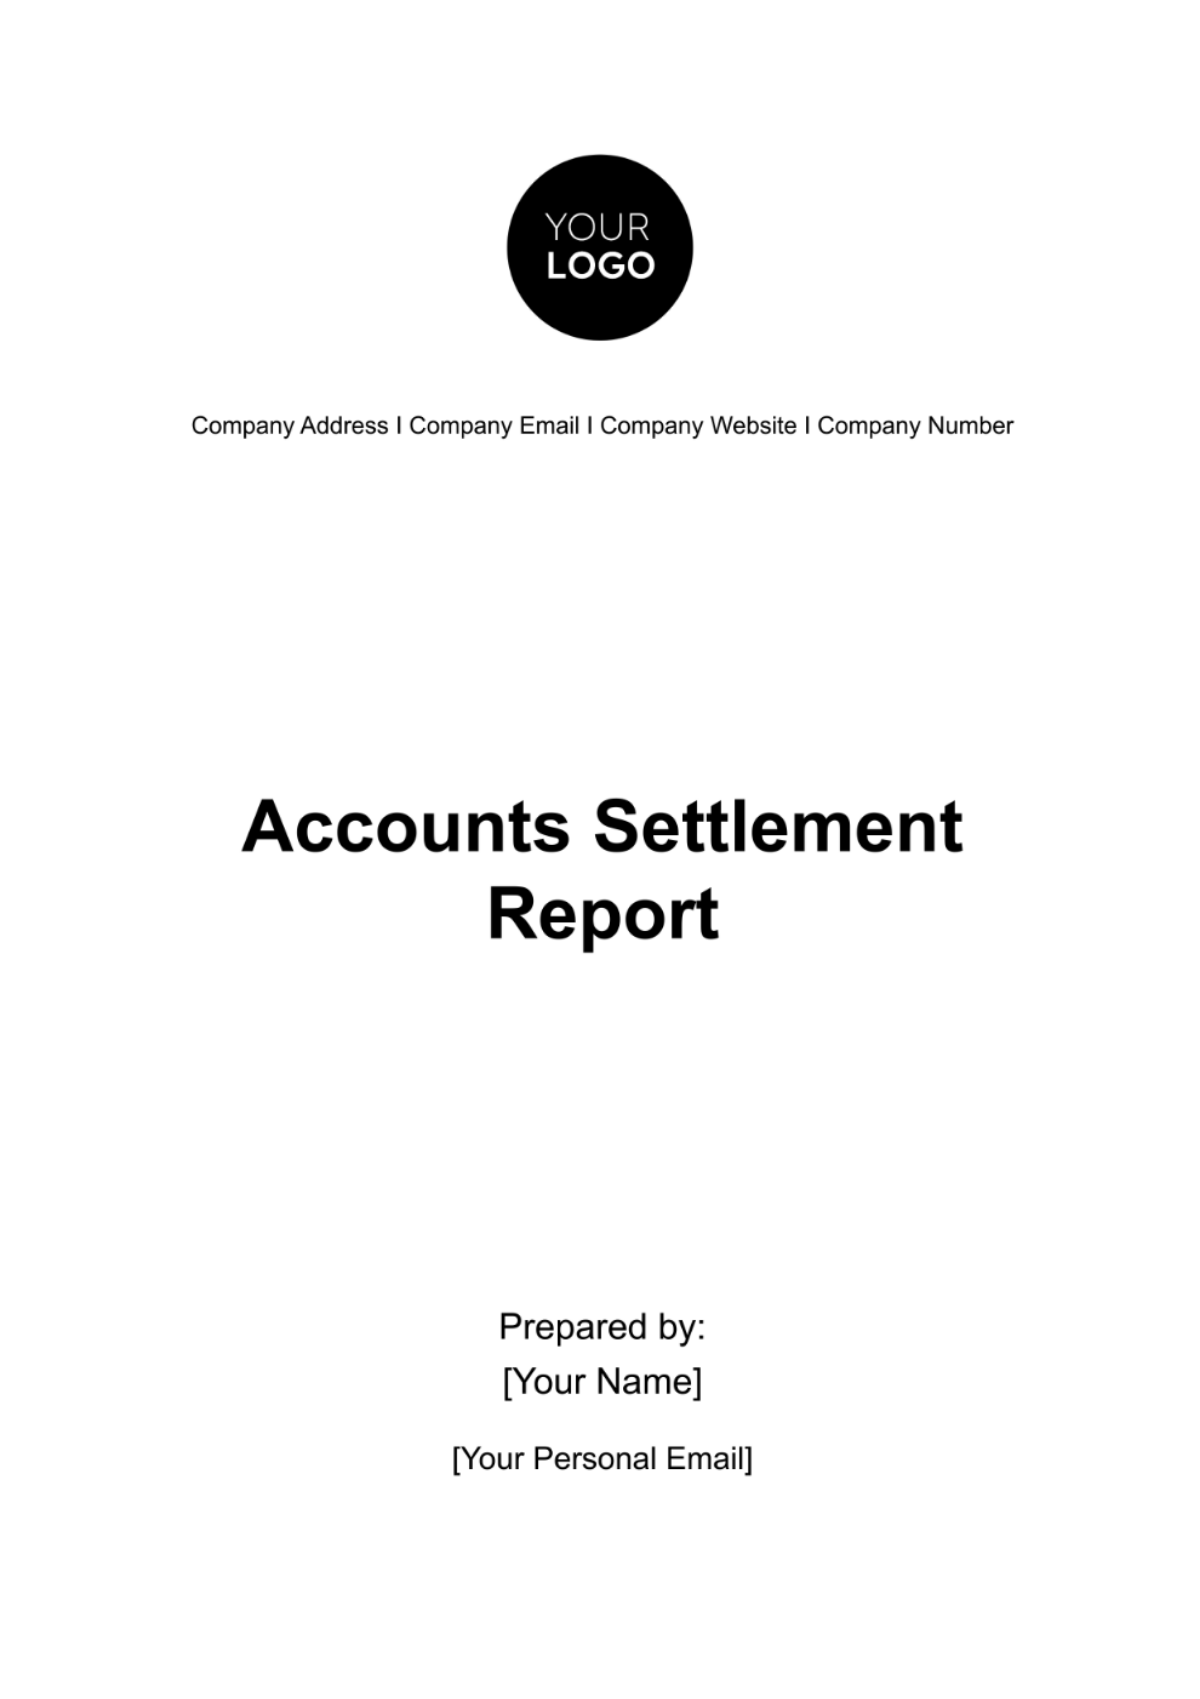 Accounts Settlement Report Template